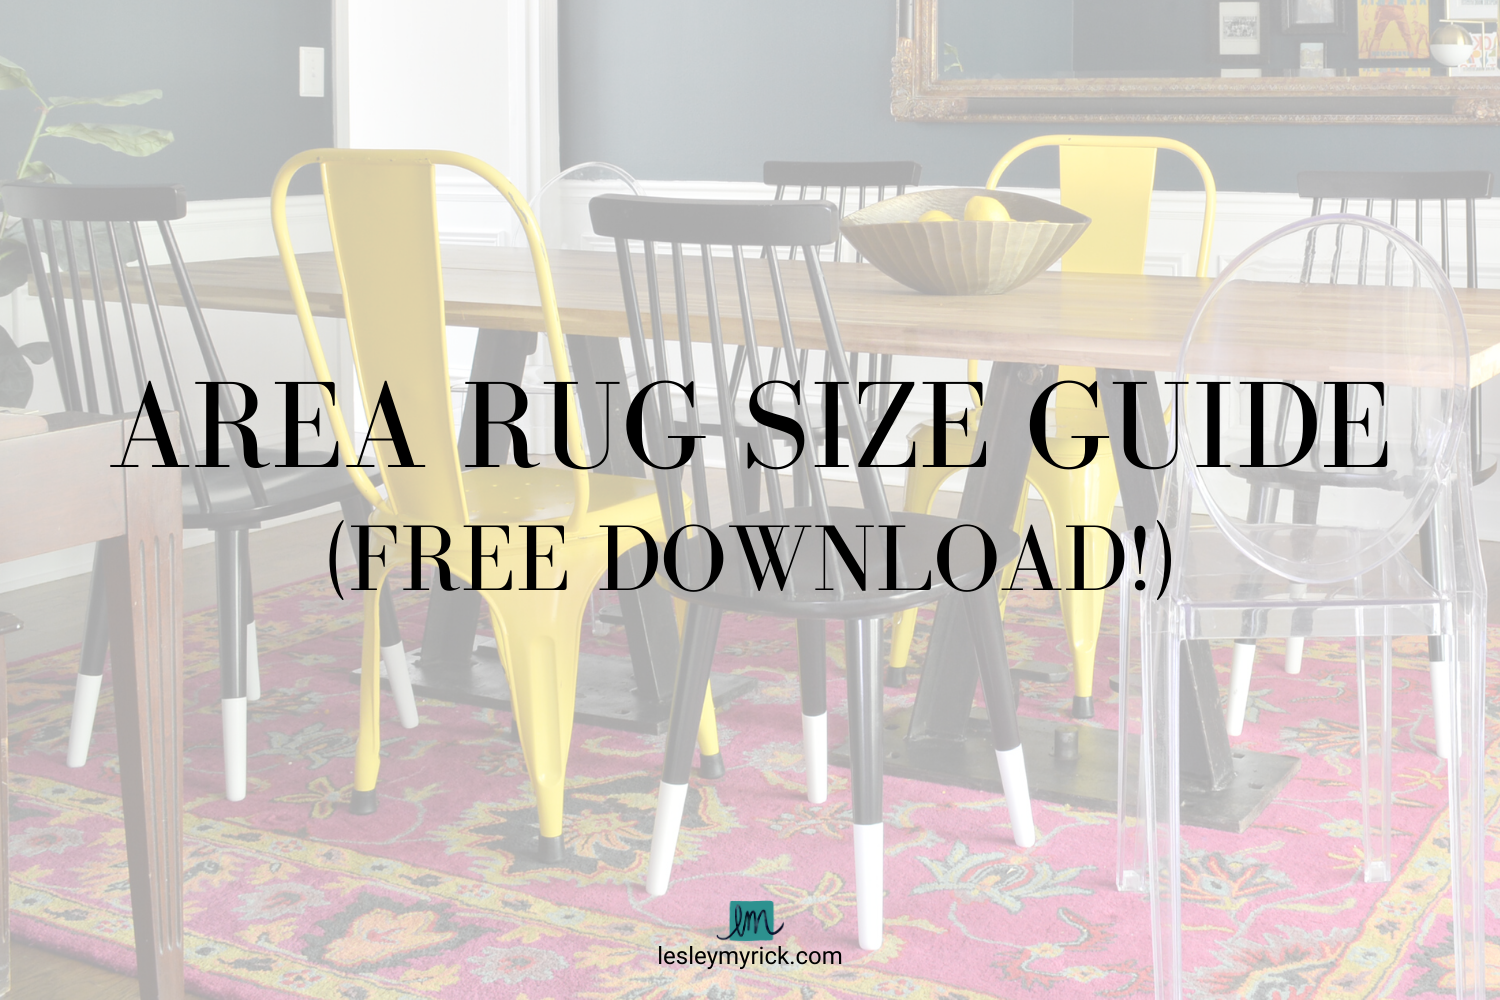 Area Rug Size Guide Free, Area Rug Size Guide For Dining Room